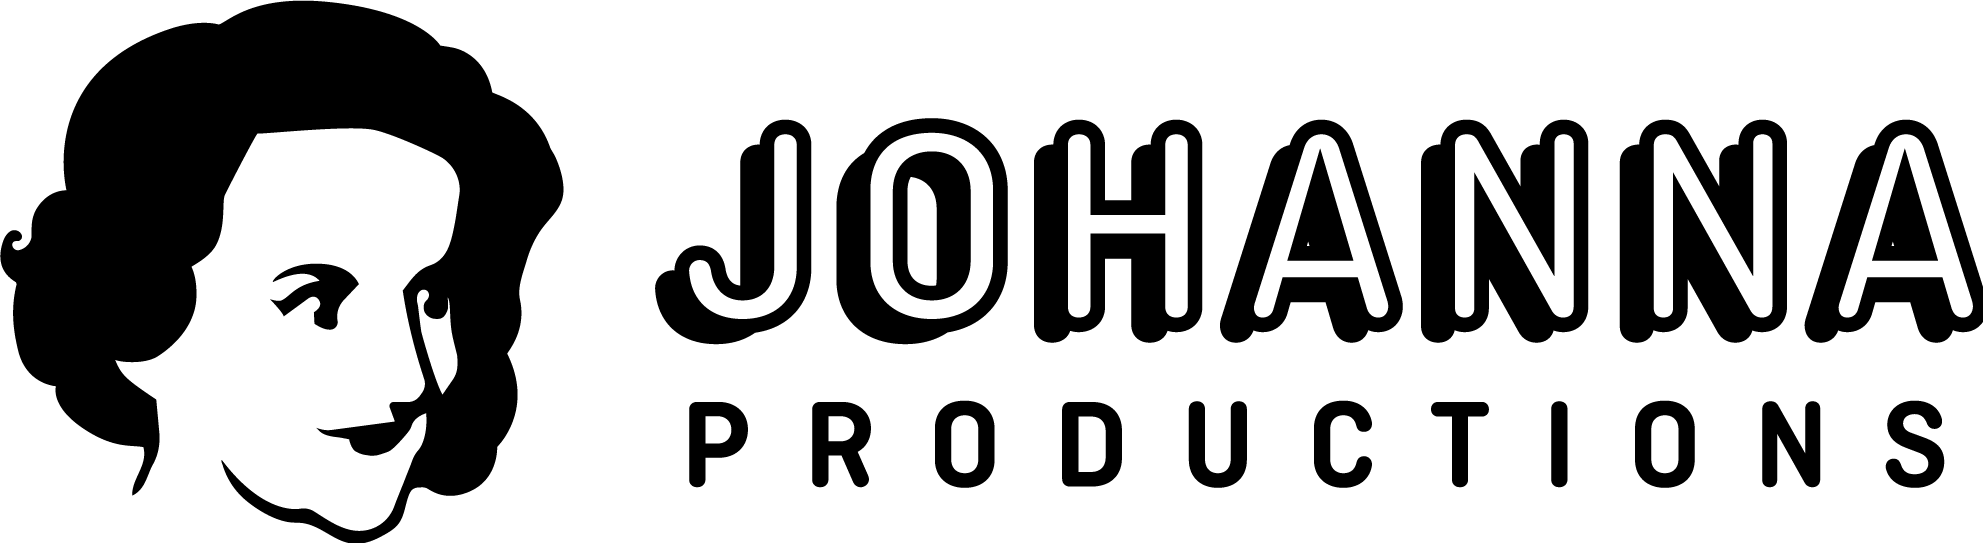 Johanna Productions